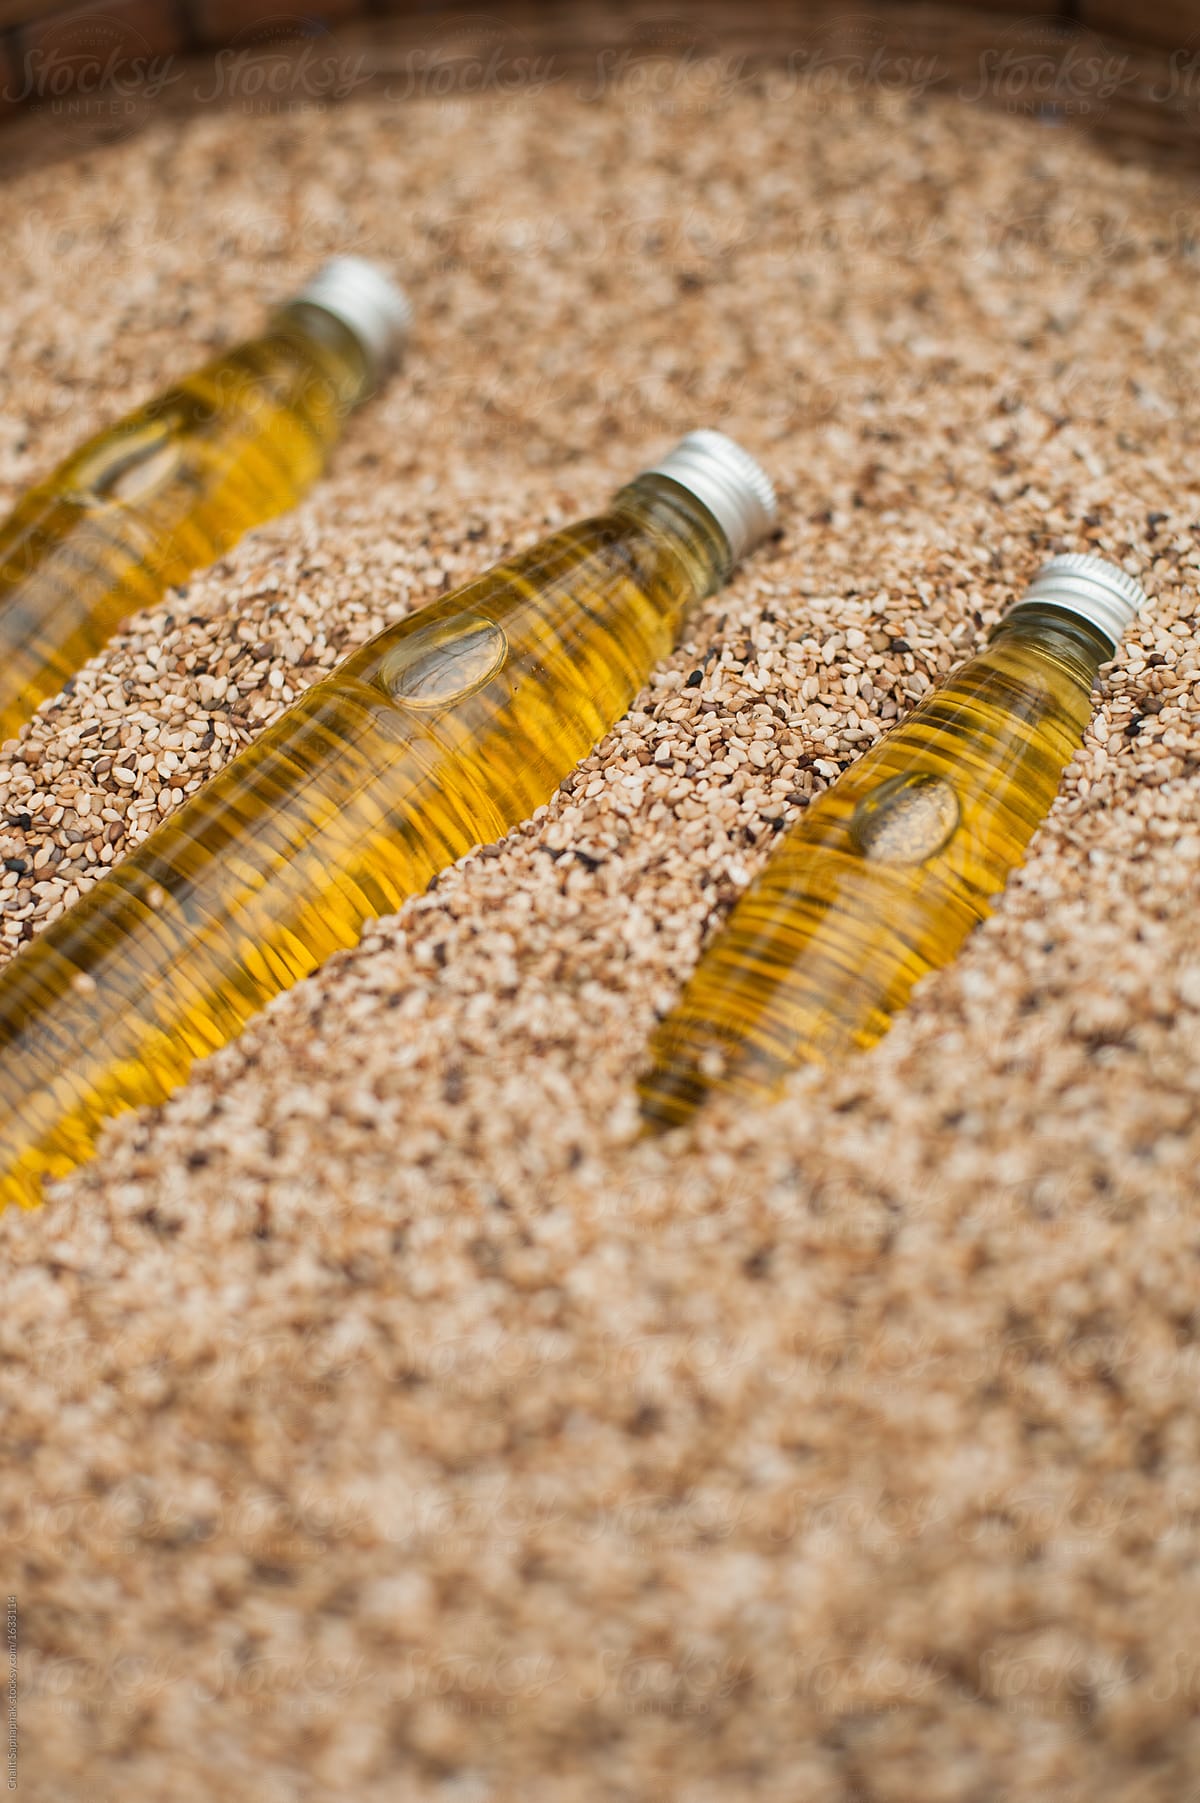 Organic sesame oil